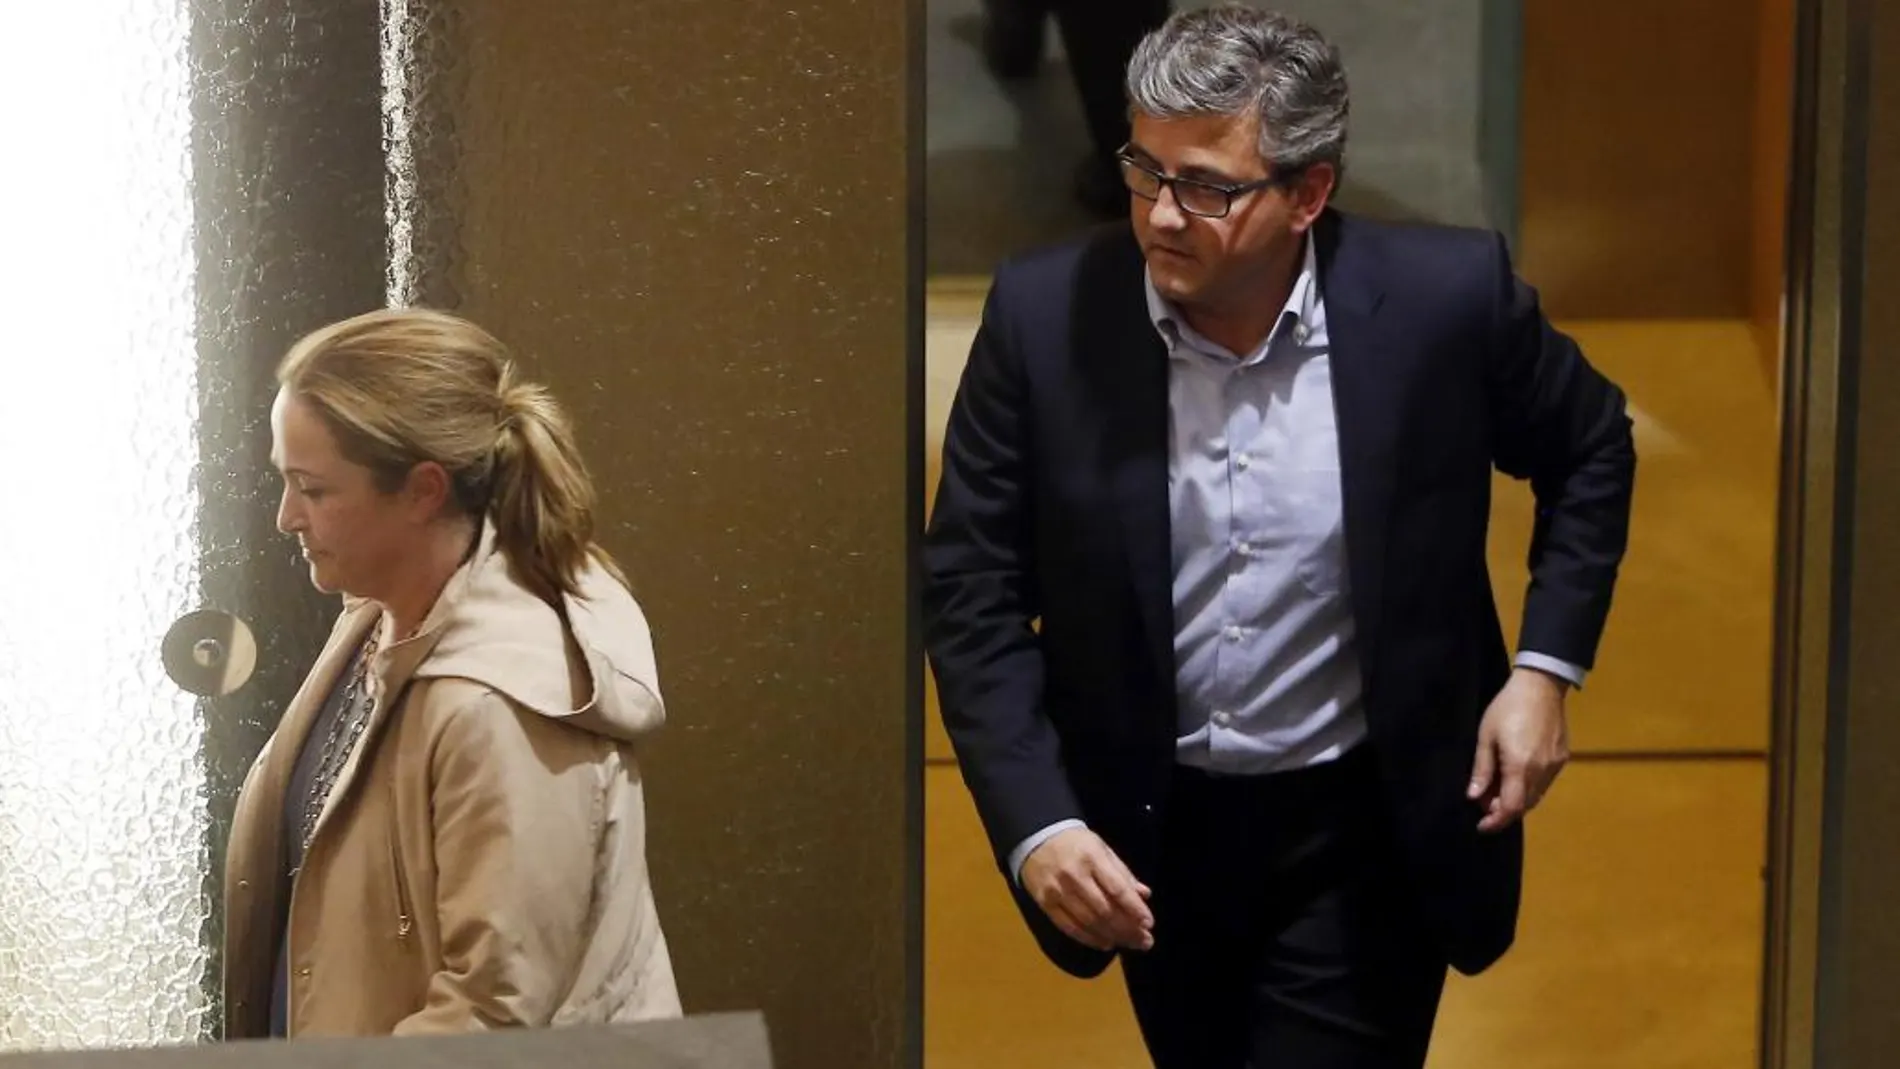 Los concejales del PP del Ayuntamiento de Valencia, Lourdes Bernal y Cristobal Grau, a su salida de los grupos parlamentarios del PP de la Comunitat Valenciana